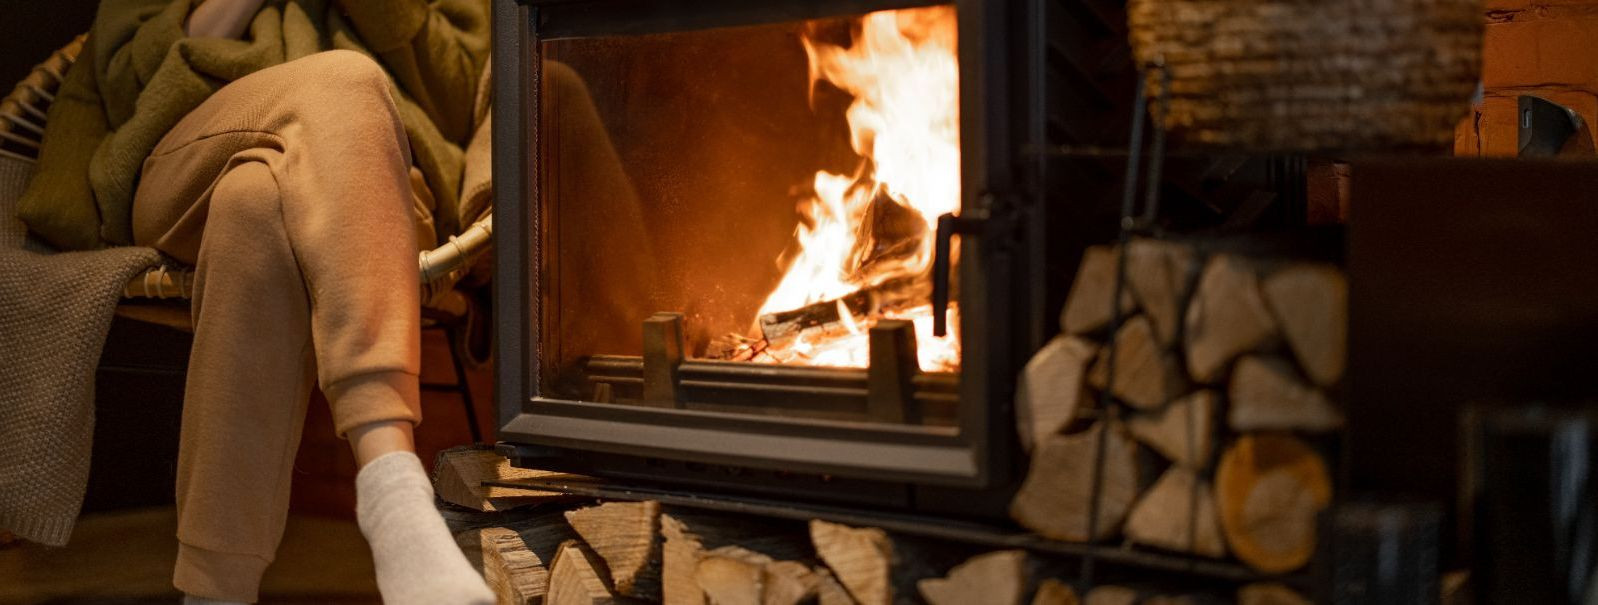 Kodune soojus ja hubasus algavad küttesüsteemist. Oma kodus selle soovitud atmosfääri loomiseks on oluline hoida kütteseadmed efektiivsed, toimivad ja visuaalse